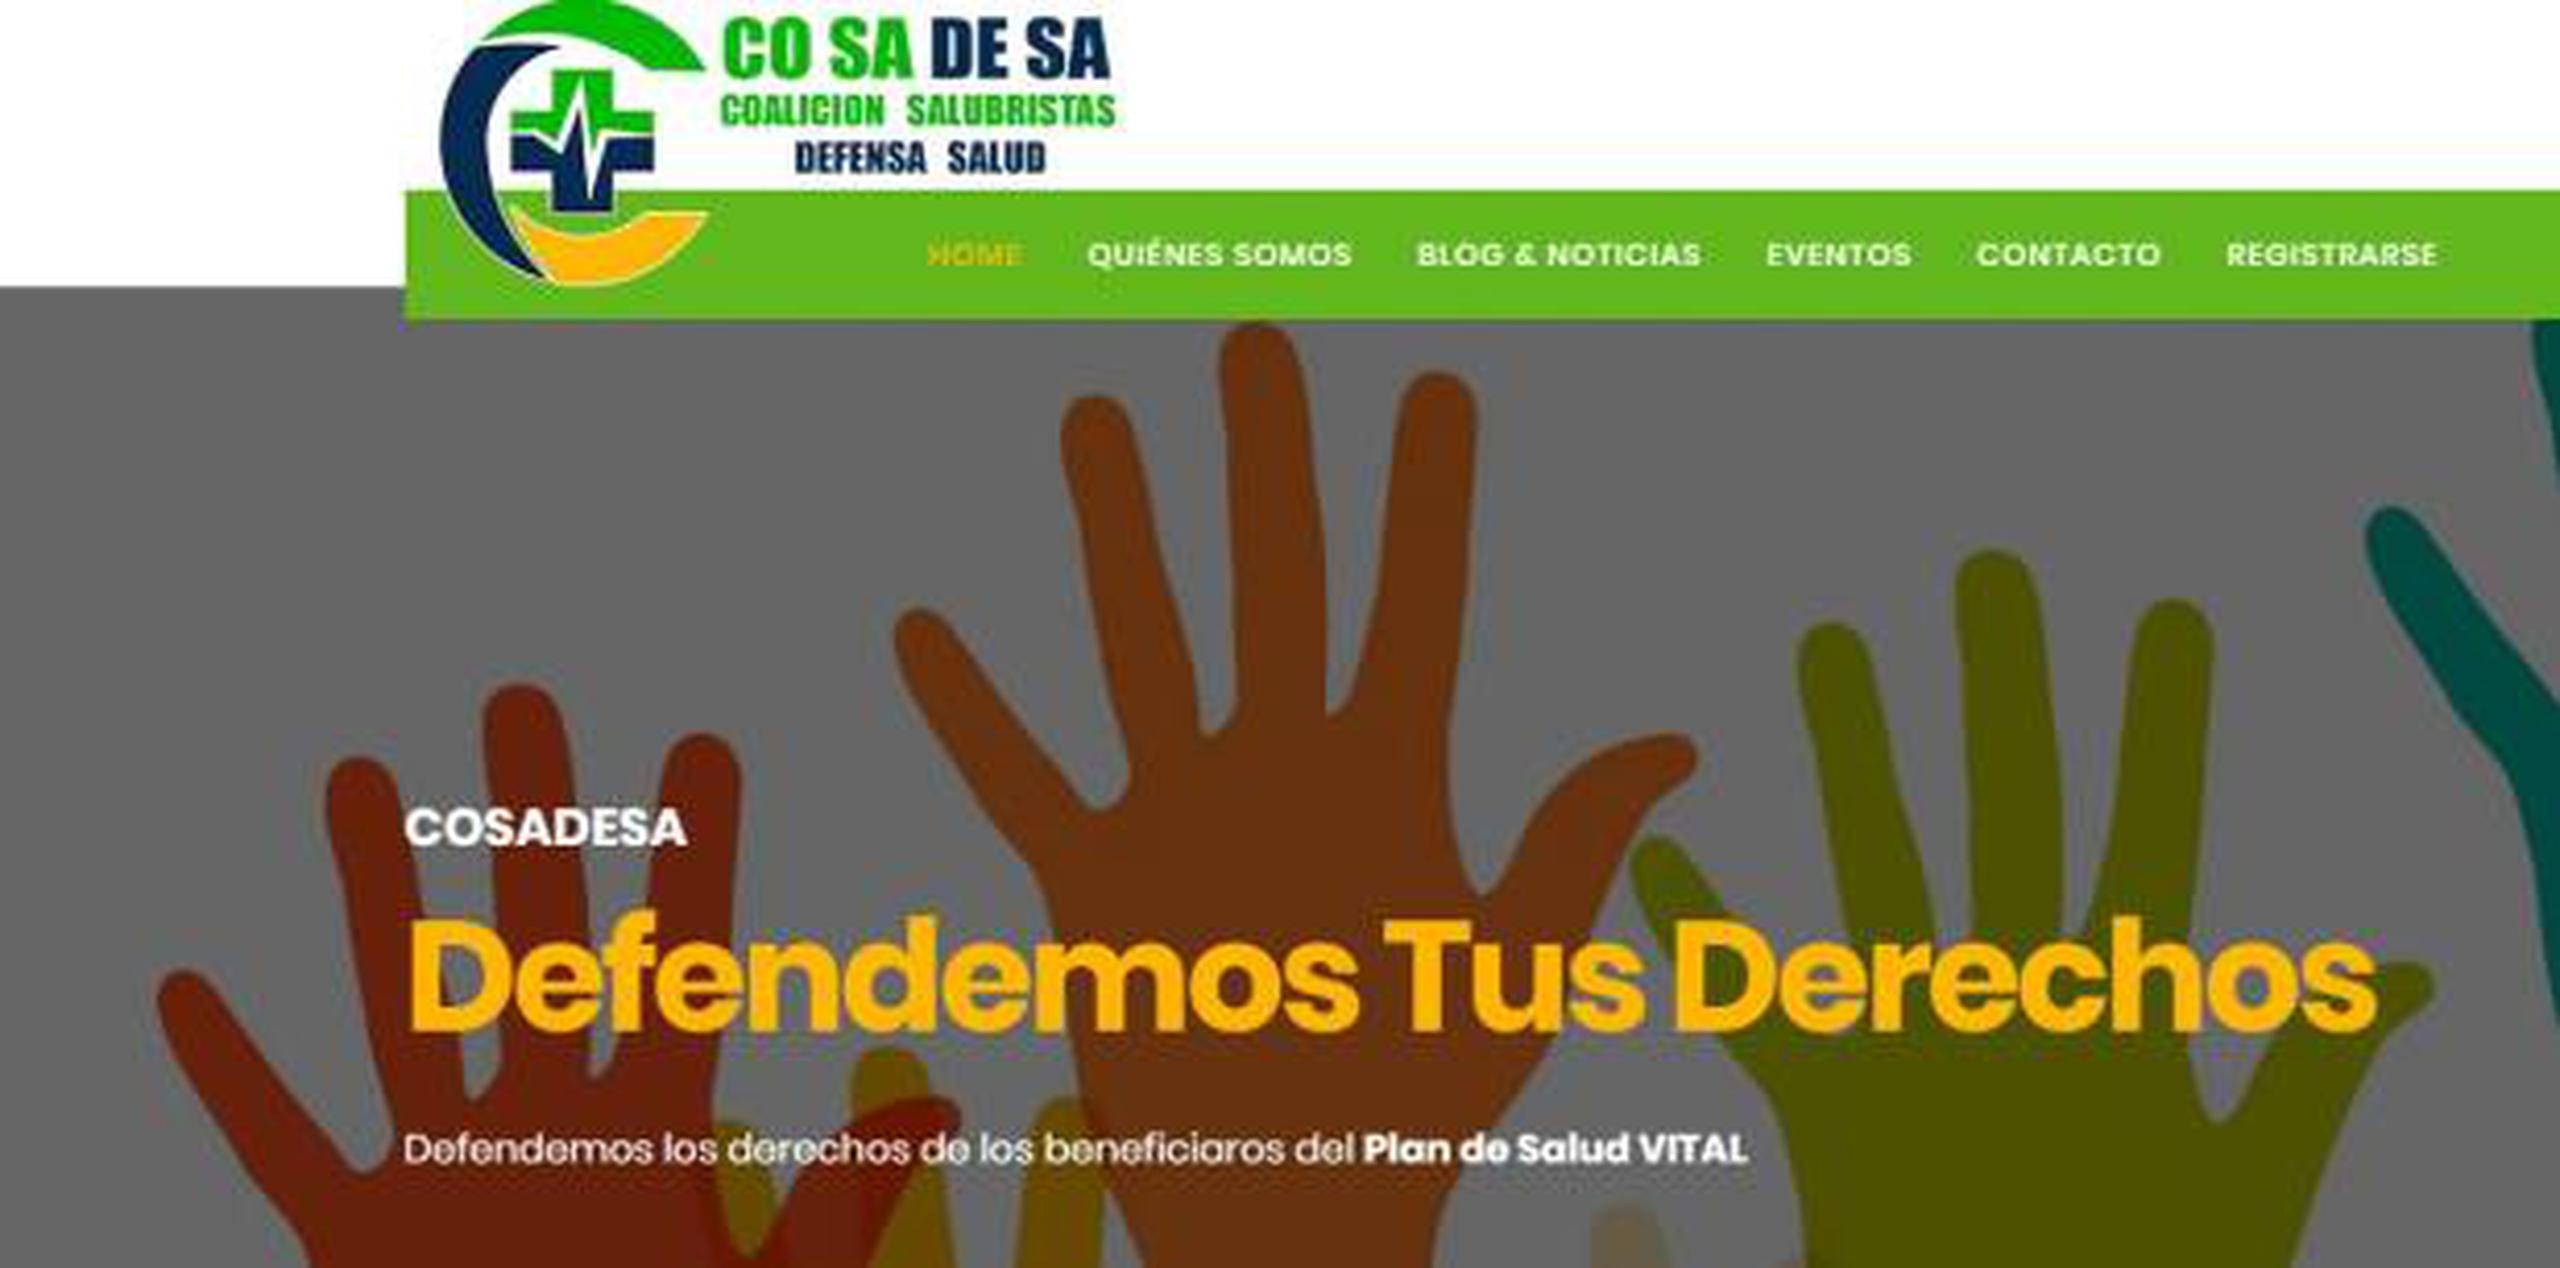 La recién creada organización (Cosadesa) lanzó desde la conferencia de prensa al mediodía de hoy la página www.cosadepacientes.com para que los usuarios del plan Vital puedan reportar sus problemas y quejas. (Captura)